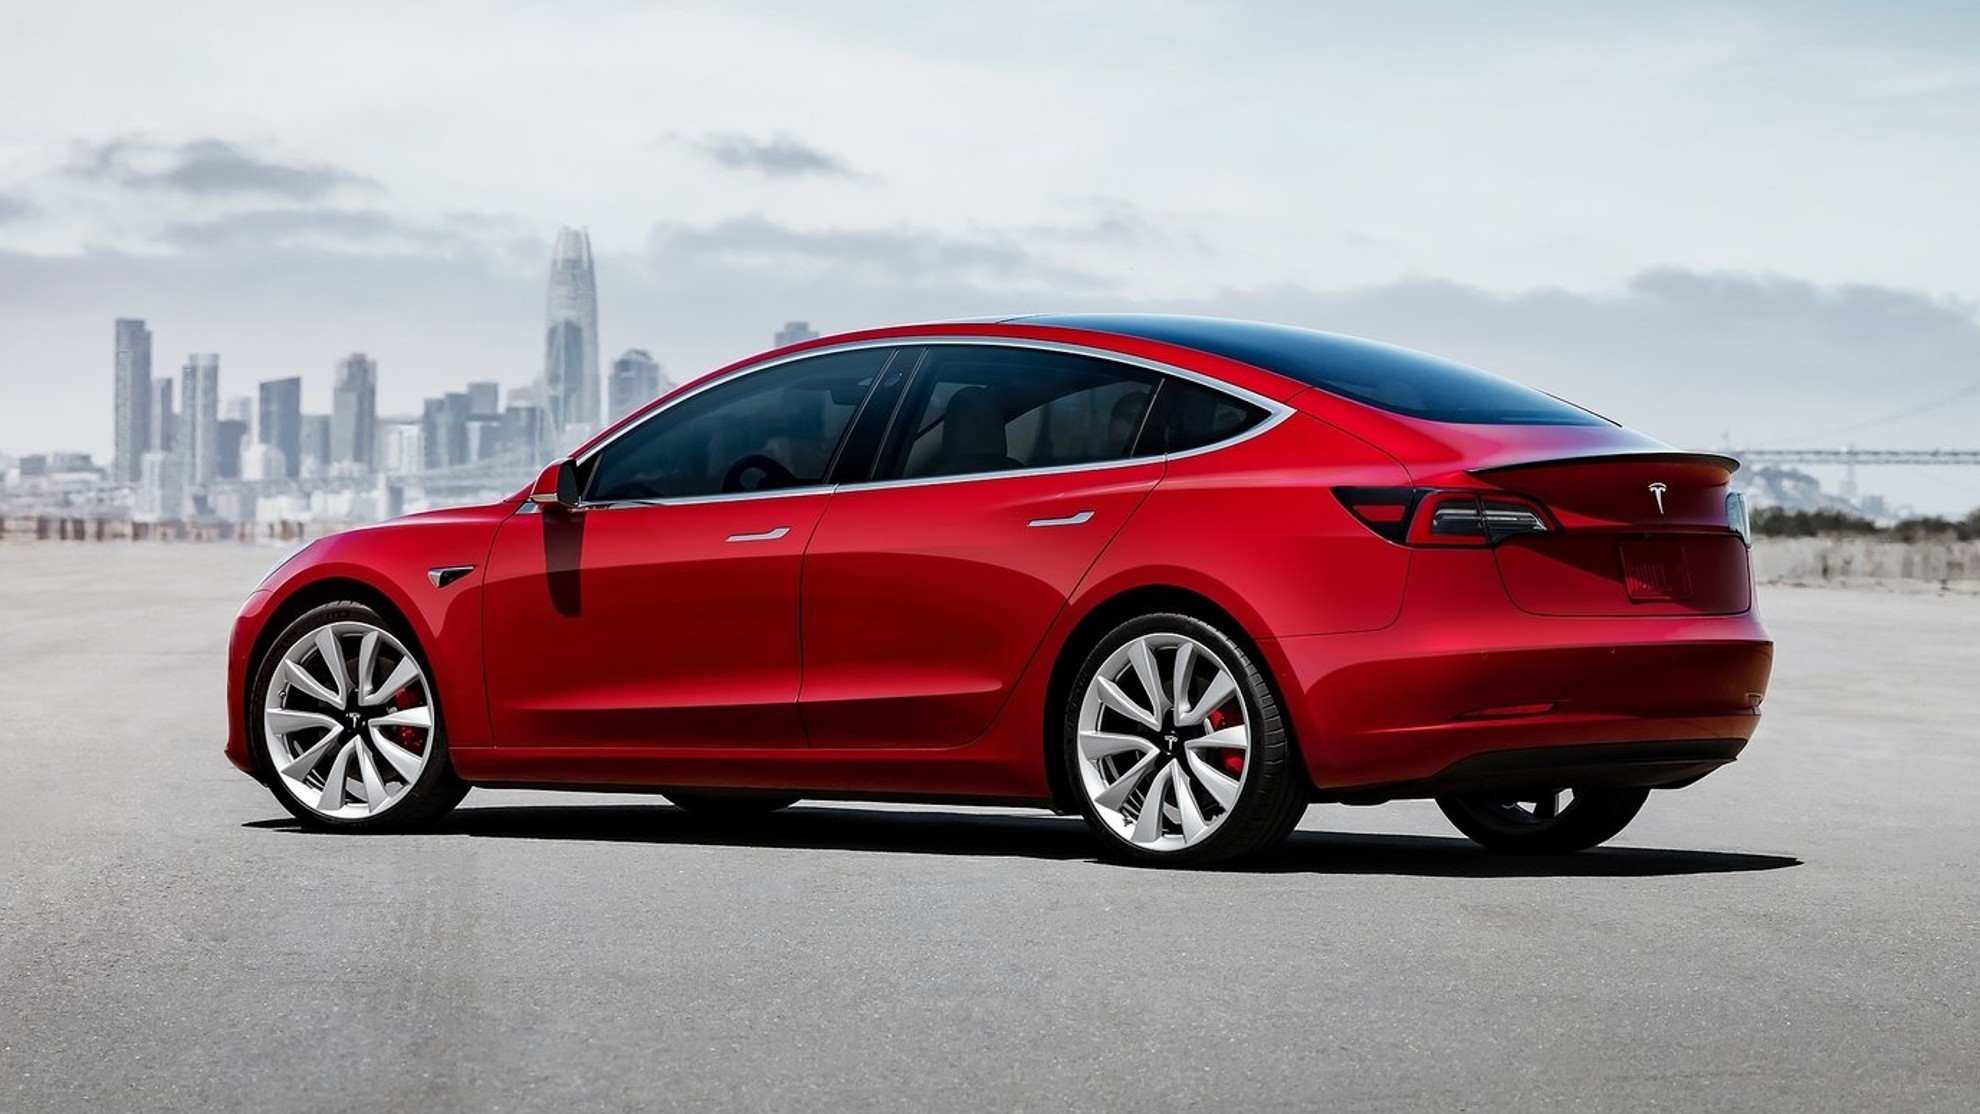 OCU - encuesta de fiabilidad - averias - Tesla - Volkswagen - Lexus